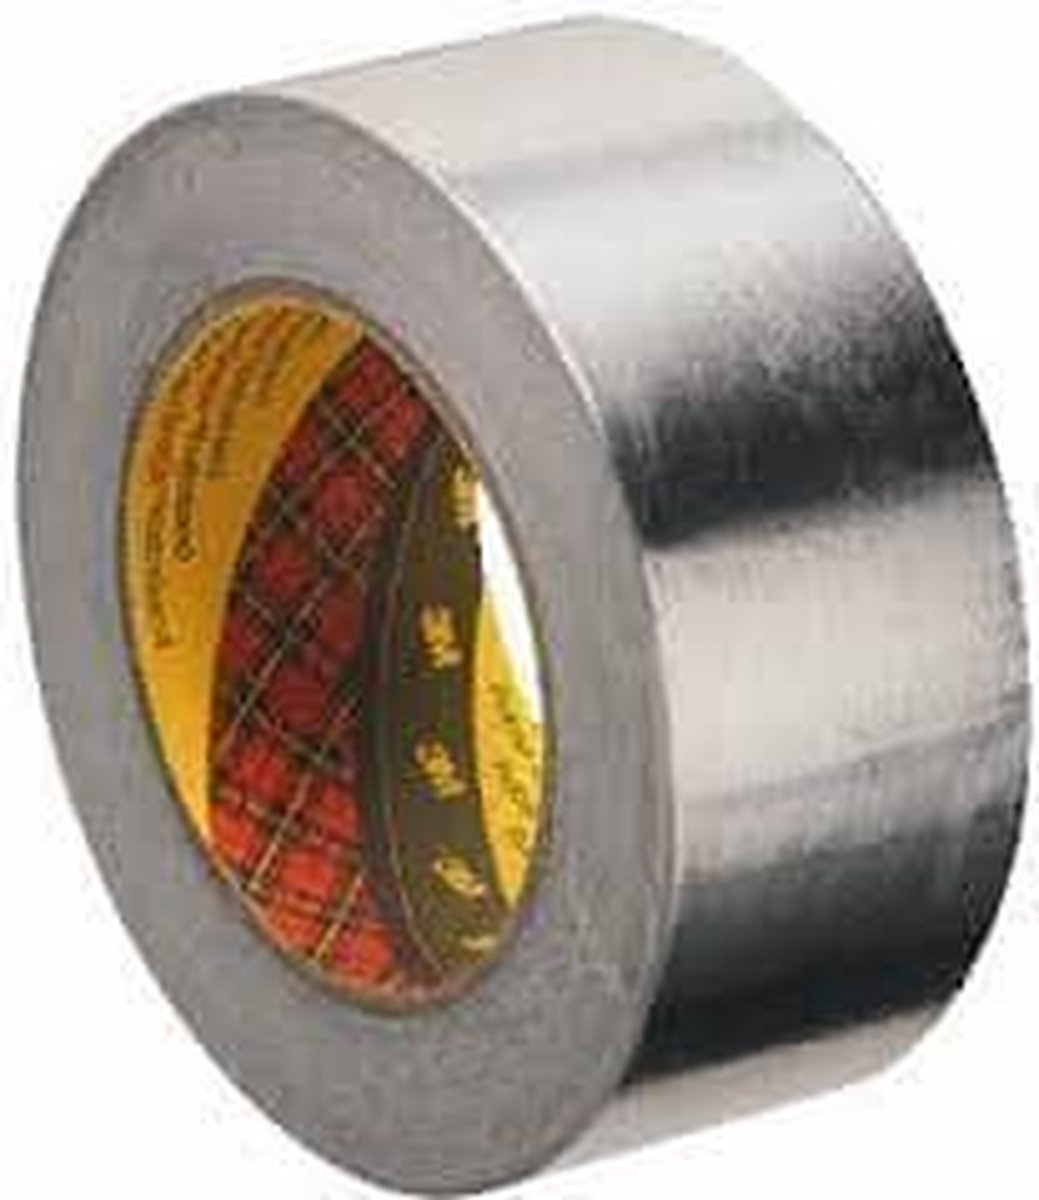 3M™ 1436F XT-6615-5215-5 Aluminium tape Zilver (l x b) 50 m x 50 mm 50 m